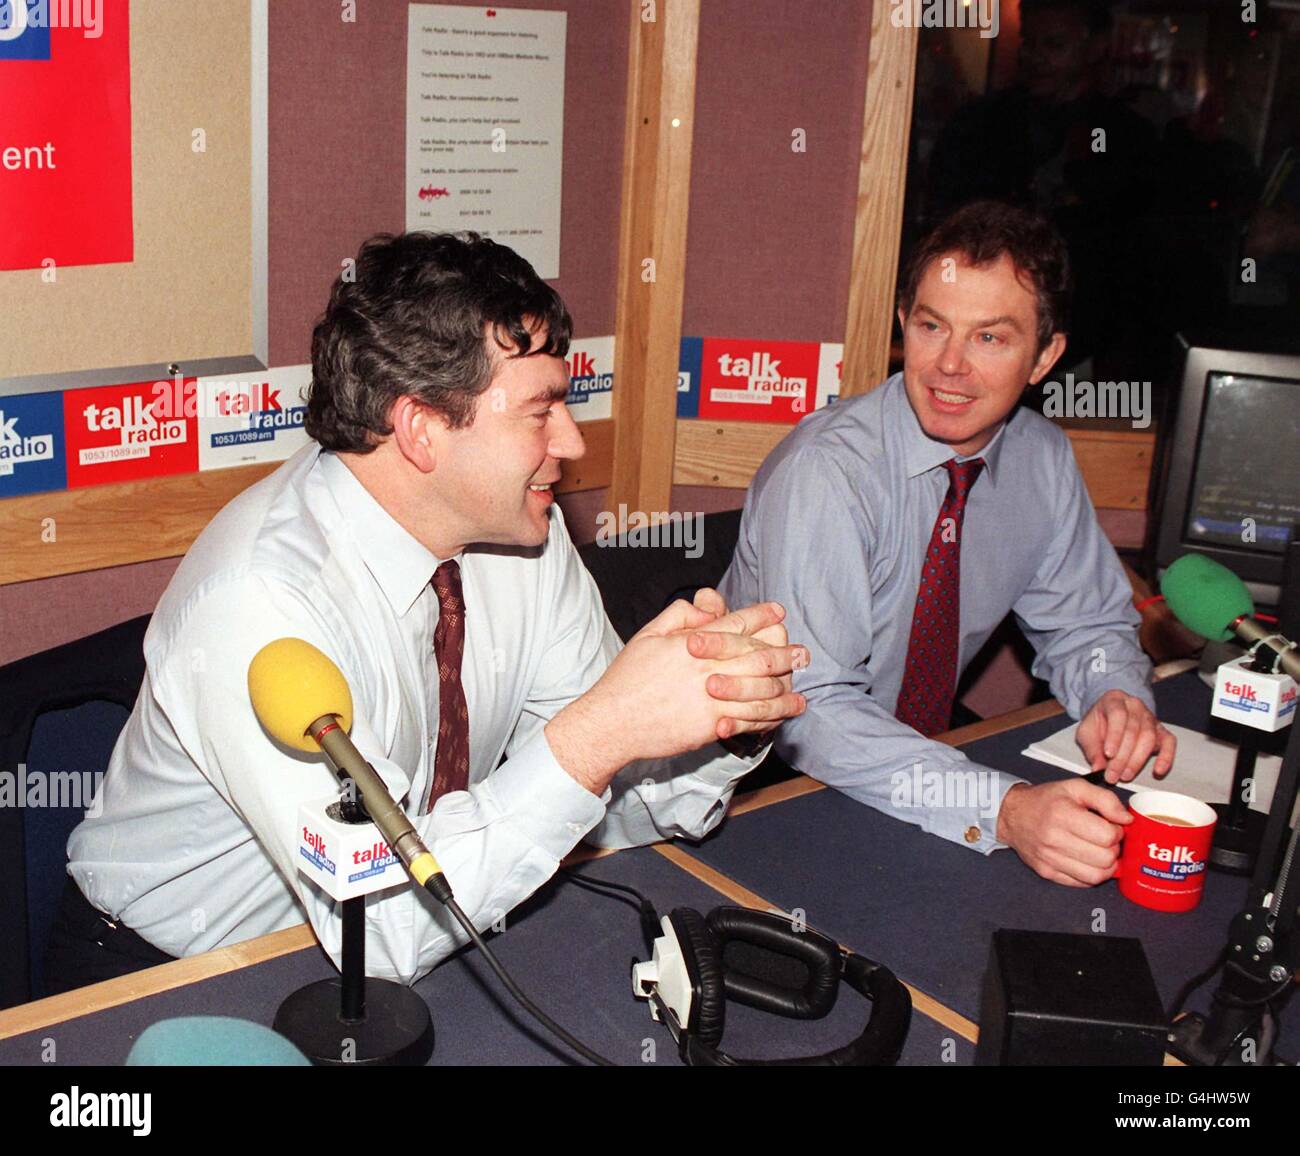 Le Premier ministre Tony Blair (à droite) se joint au Chancelier Gordon Brown pour une radio à la radio à la radio à Londres afin de défendre et de promouvoir leur récent budget.Il s'agissait de leur premier appel téléphonique commun et M. Blair a félicité M. Brown pour avoir géré l'économie britannique « brillamment ». Banque D'Images